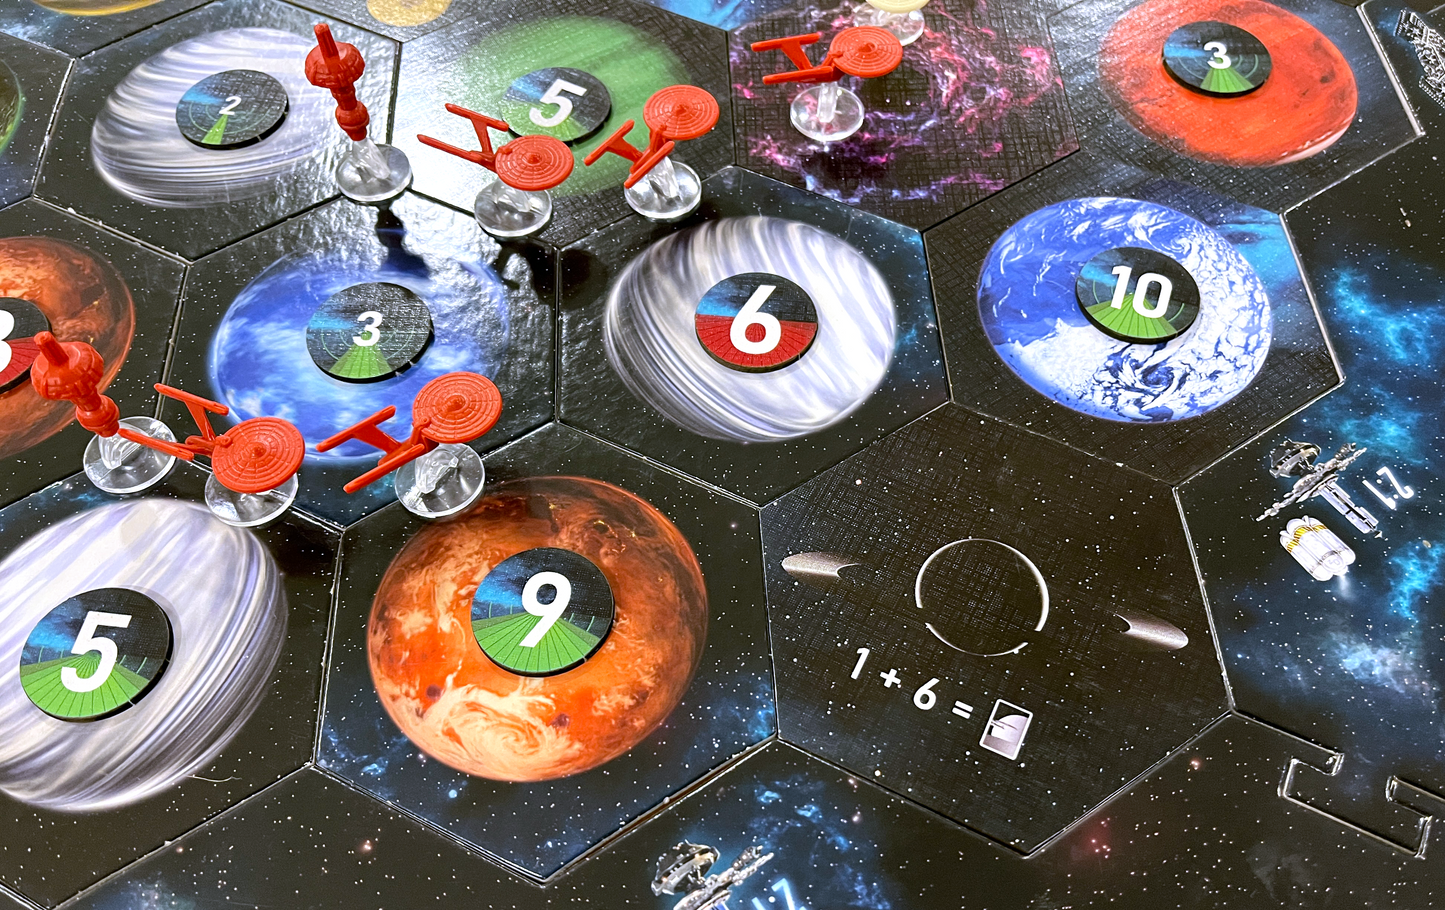 Dark Planet Scenario Expansion compatible with Catan's Star Trek Catan